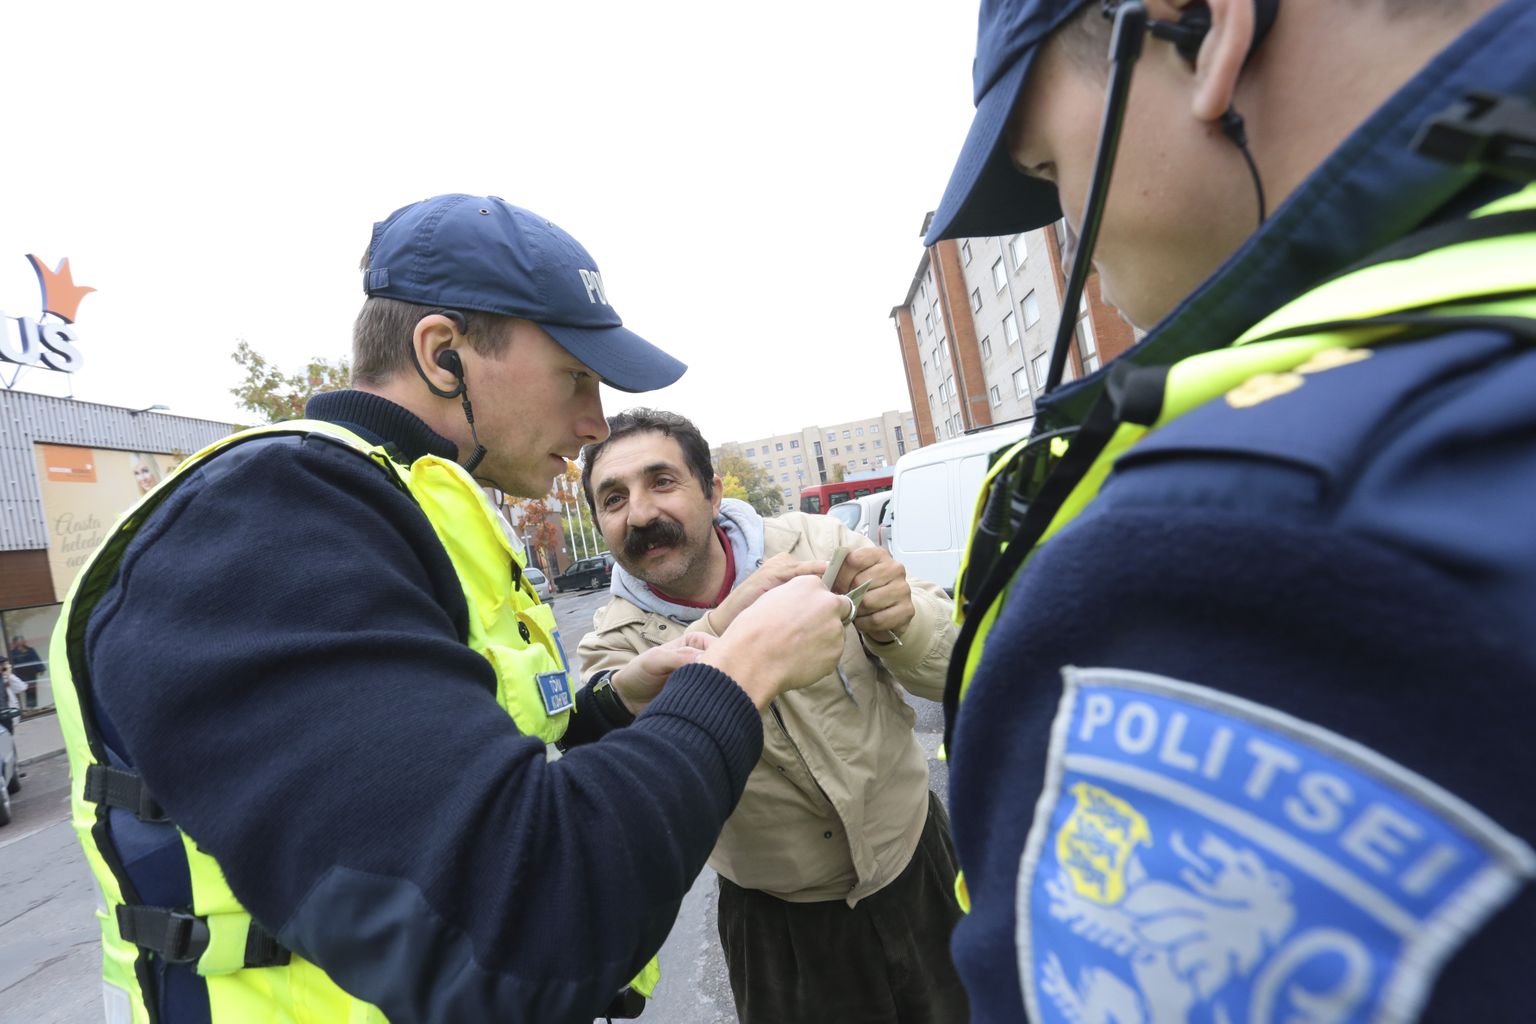 Politsei kontrollib sageli võõrtööliste Eestis viibimise seaduslikkust. Pilt on illustratiivne.